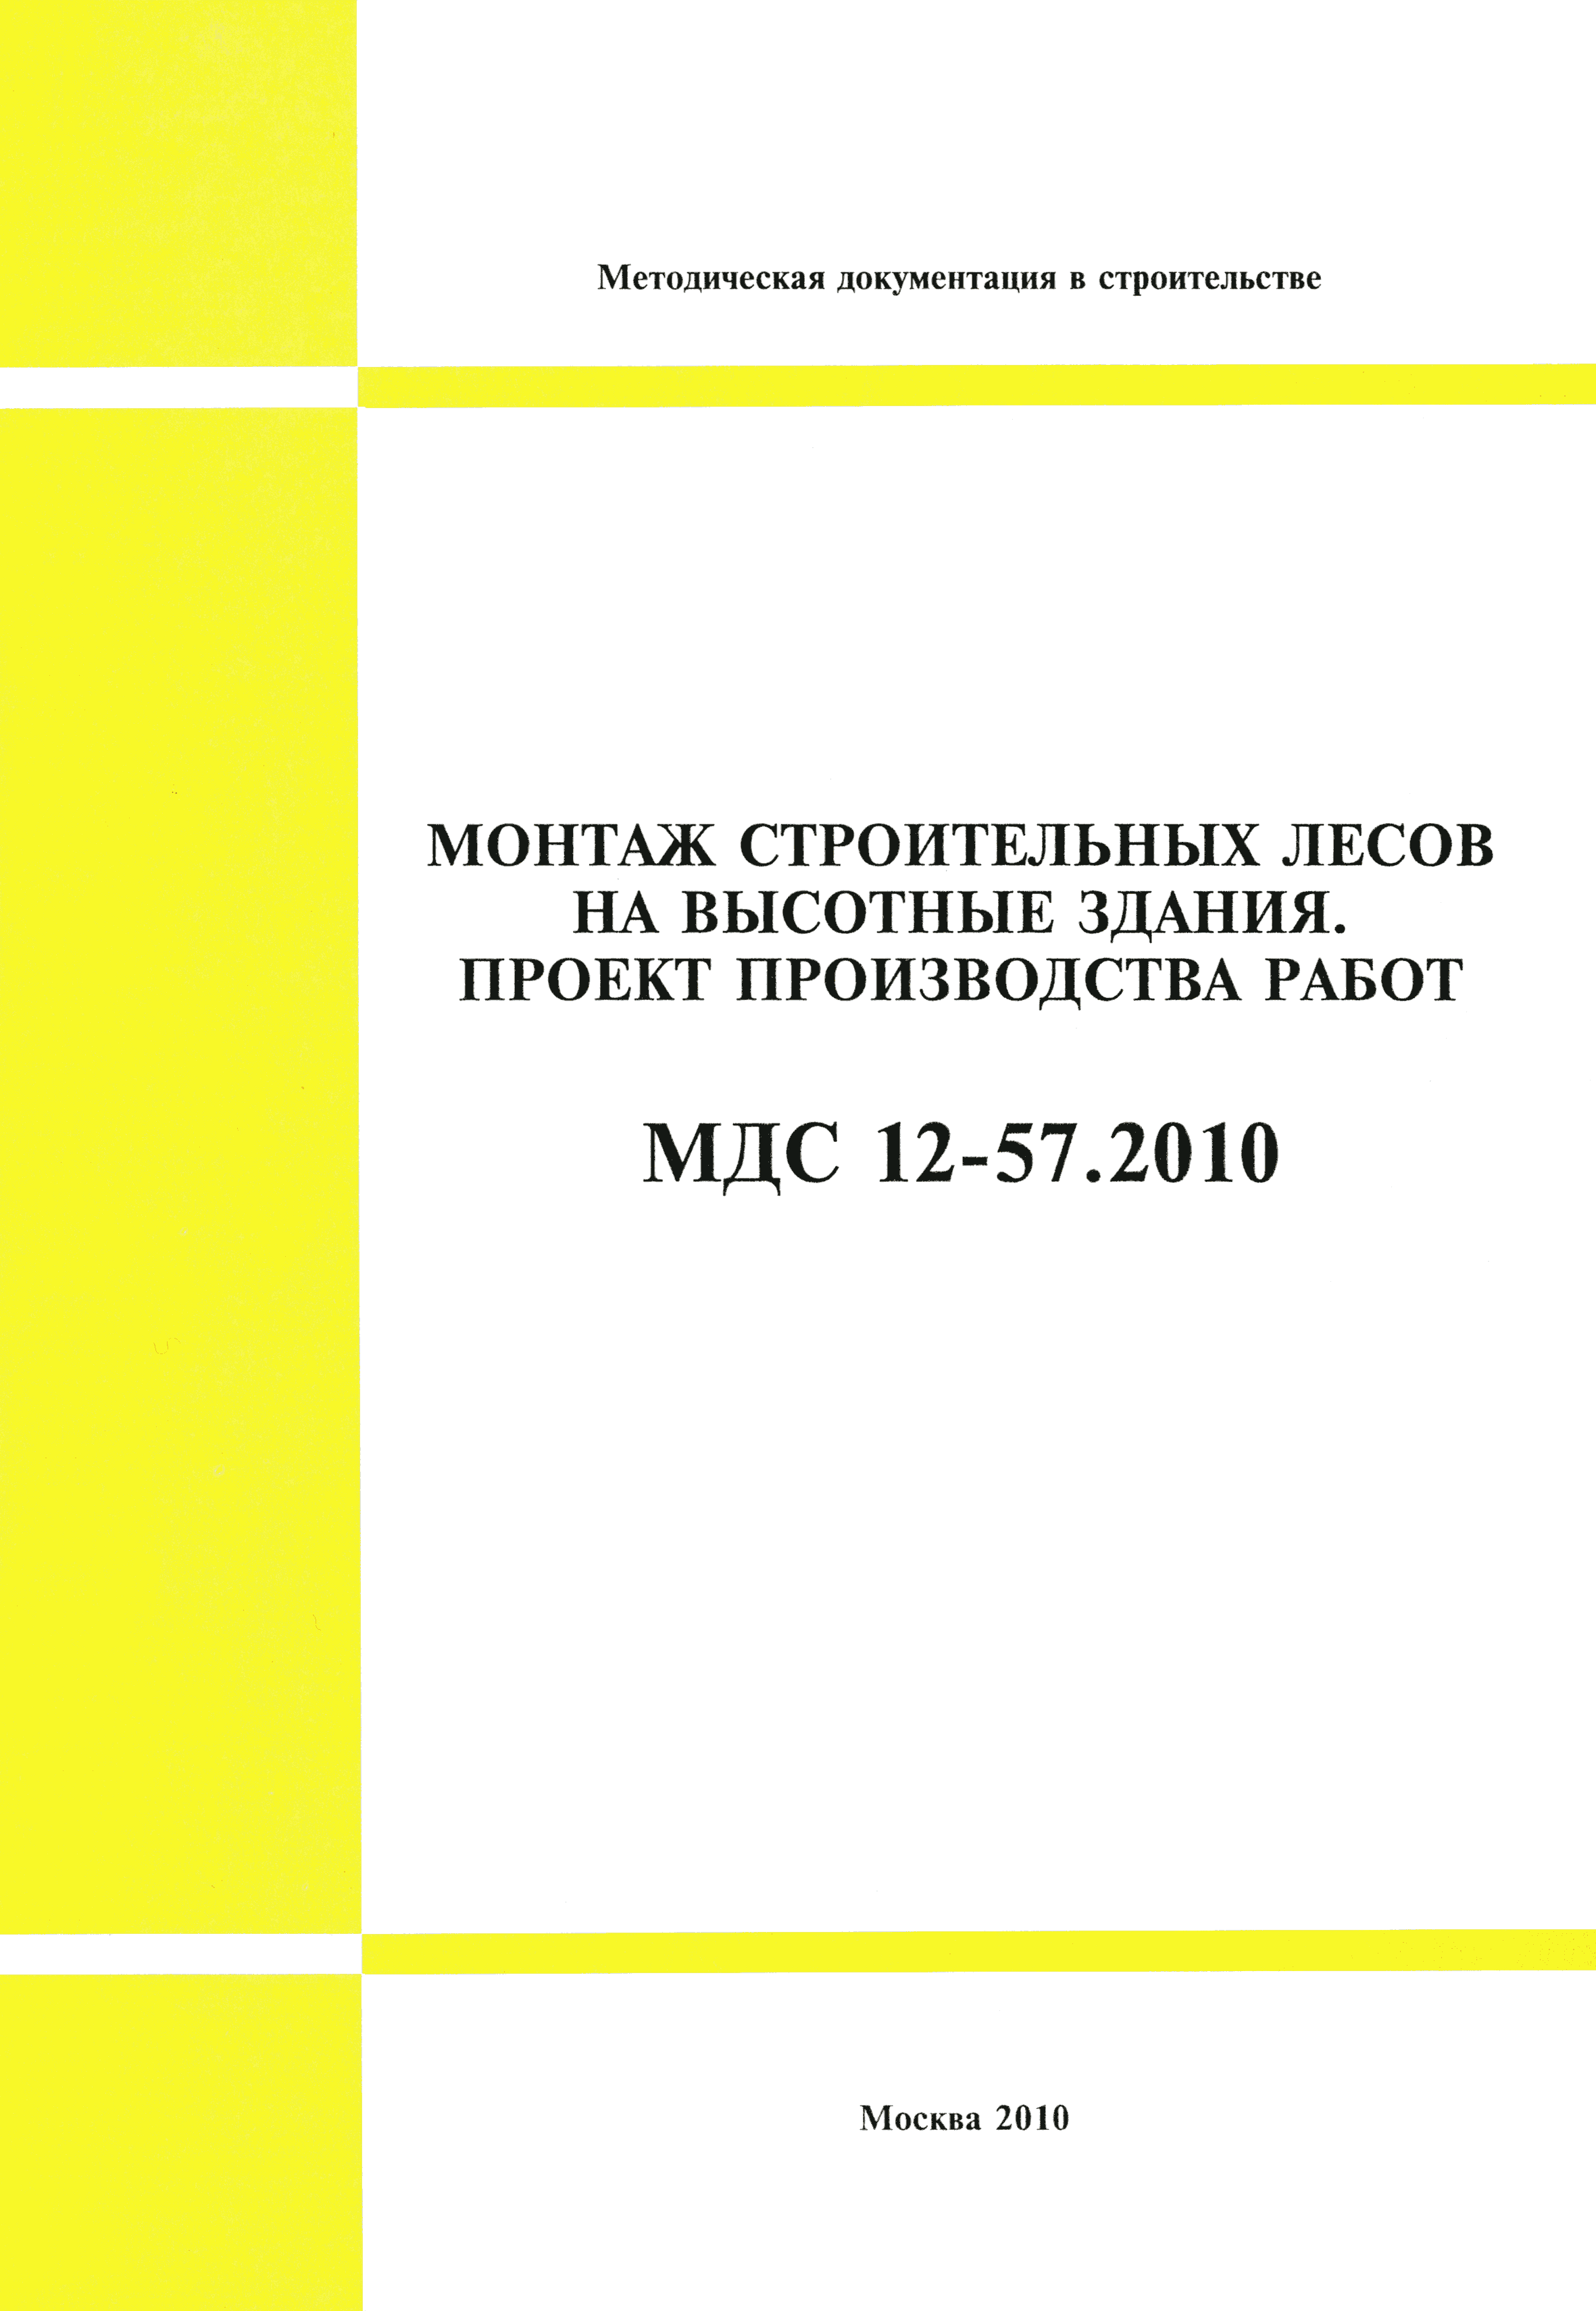 МДС 12-57.2010